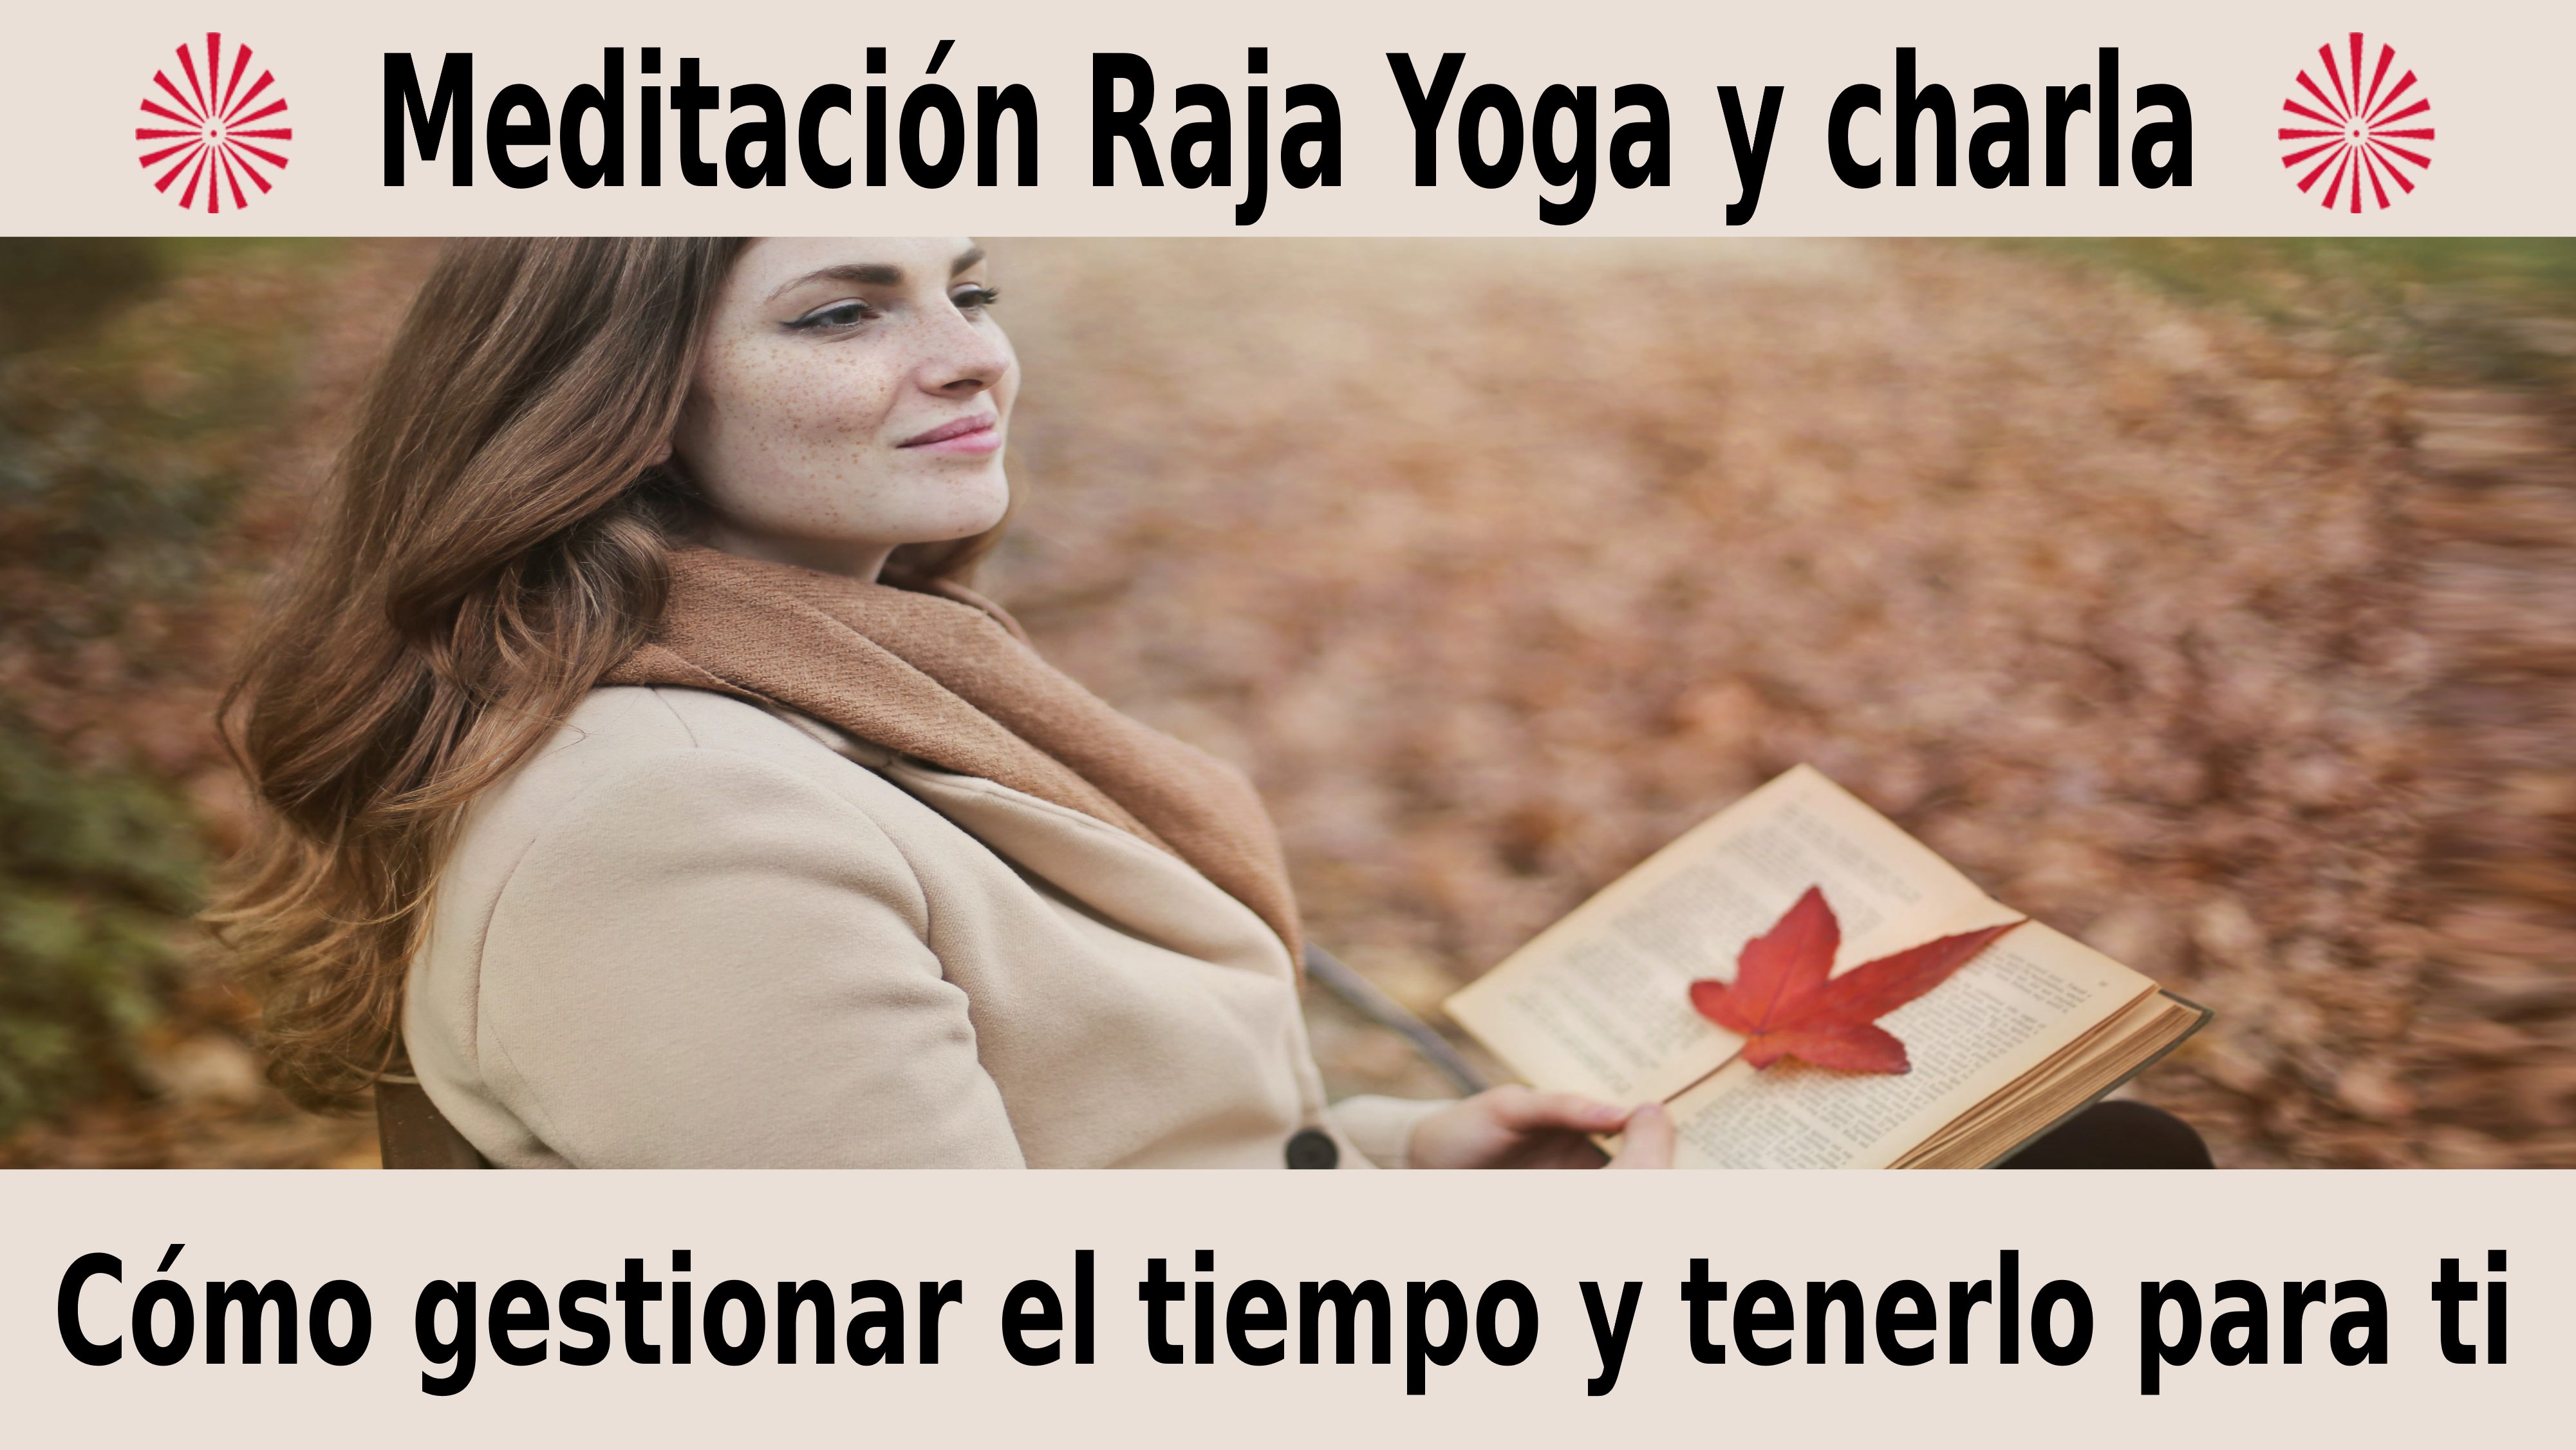 Meditación Raja Yoga y charla: Cómo gestionar el tiempo y tenerlo para ti (3 Diciembre 2020) On-line desde Barcelona